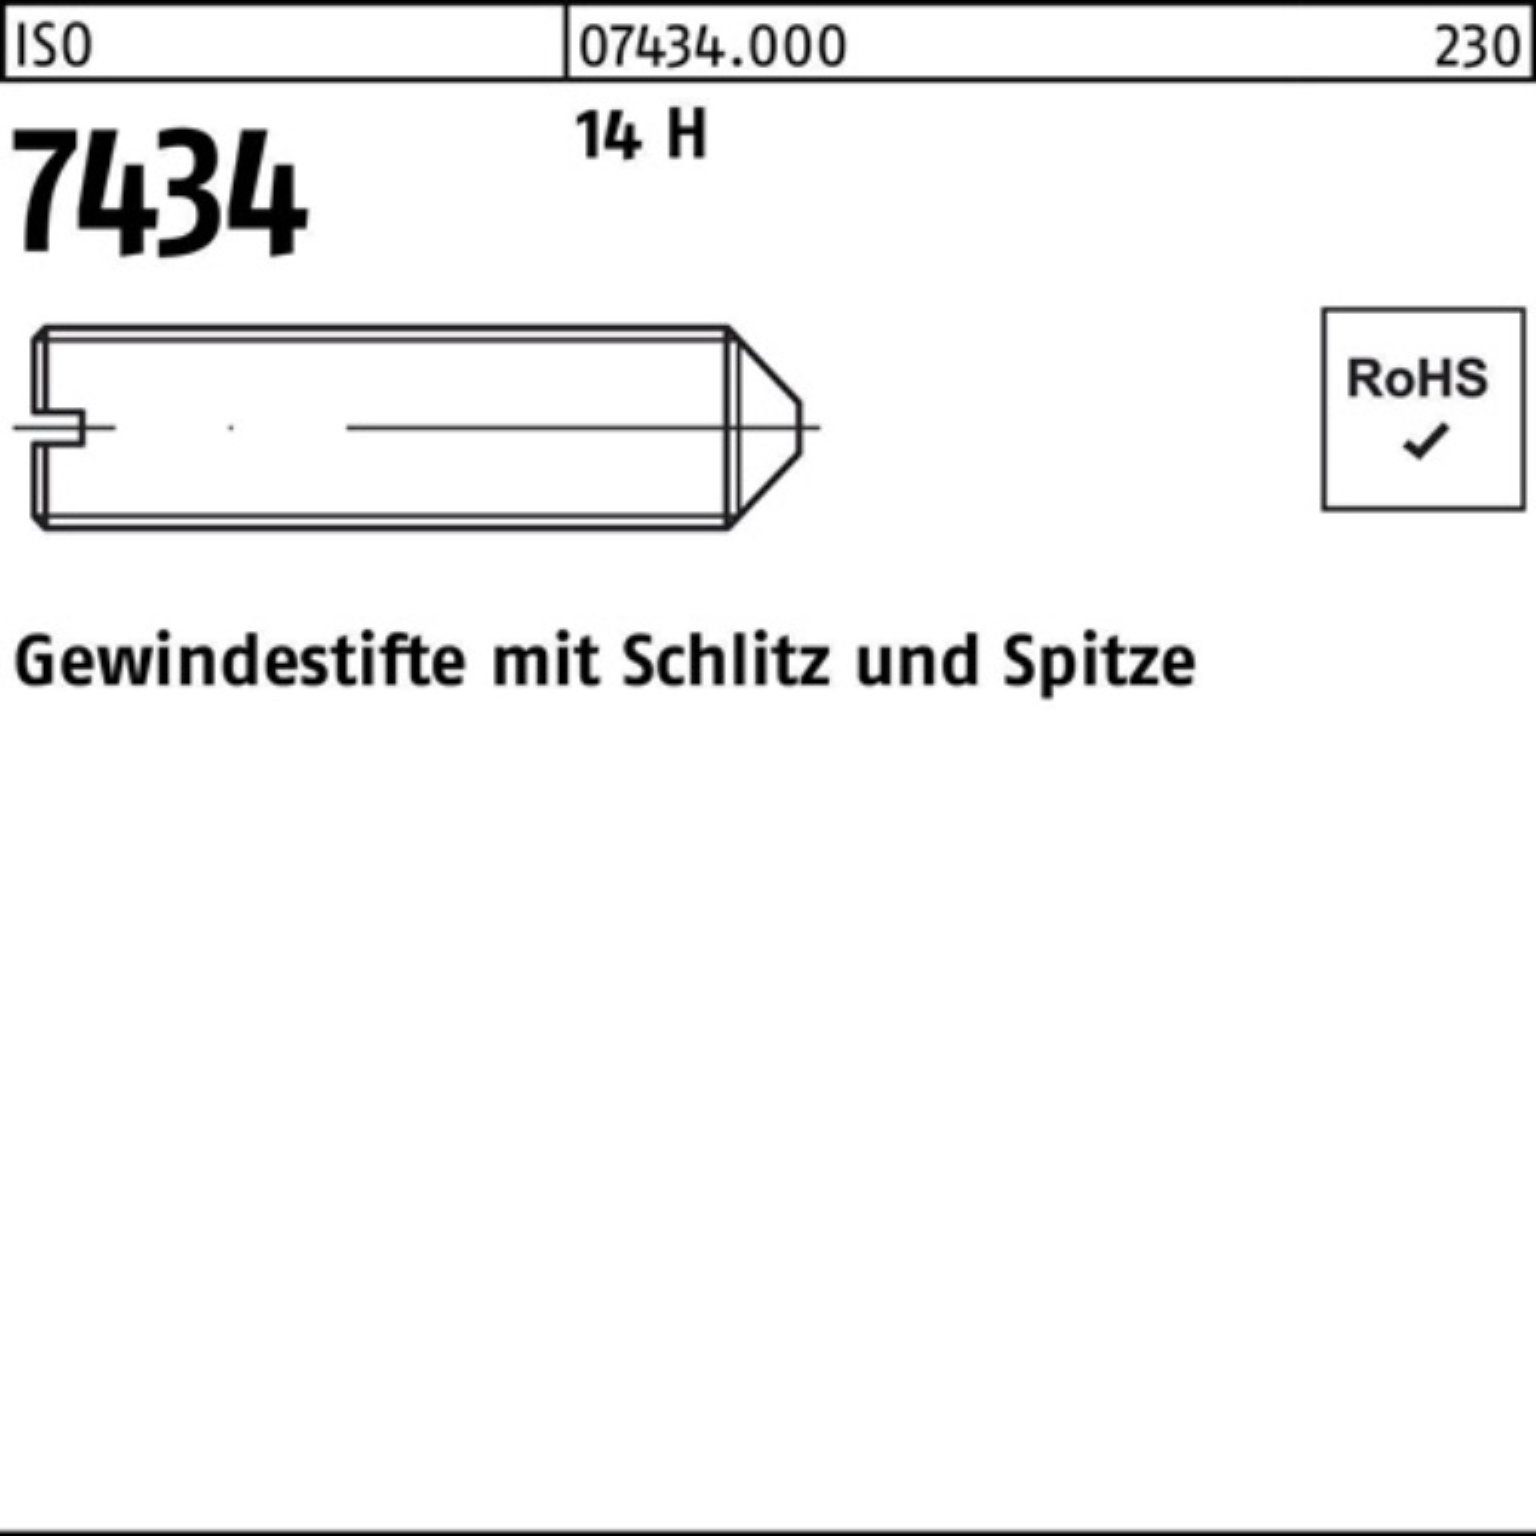 Reyher M5x 1000 Gewindebolzen ISO Spitze/Schlitz Pack Stüc H Gewindestift 14 7434 5 1000er